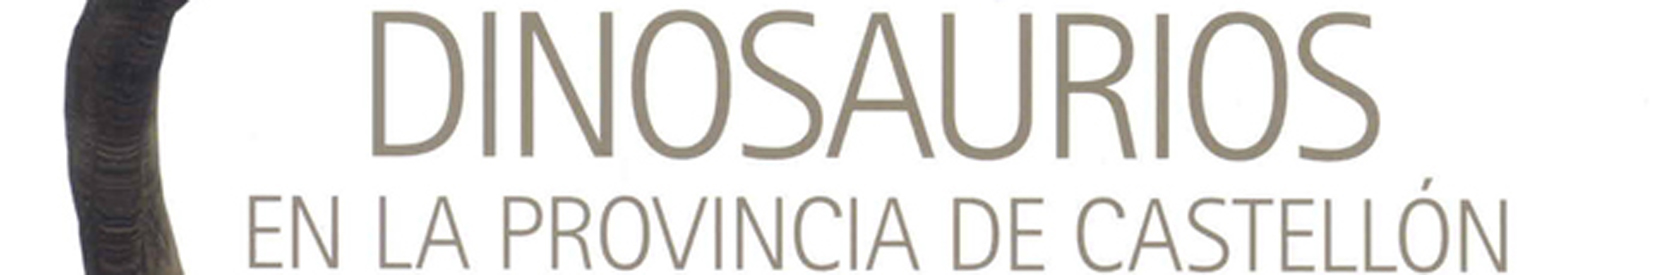 Dinosaurios en la provincia de Castellón